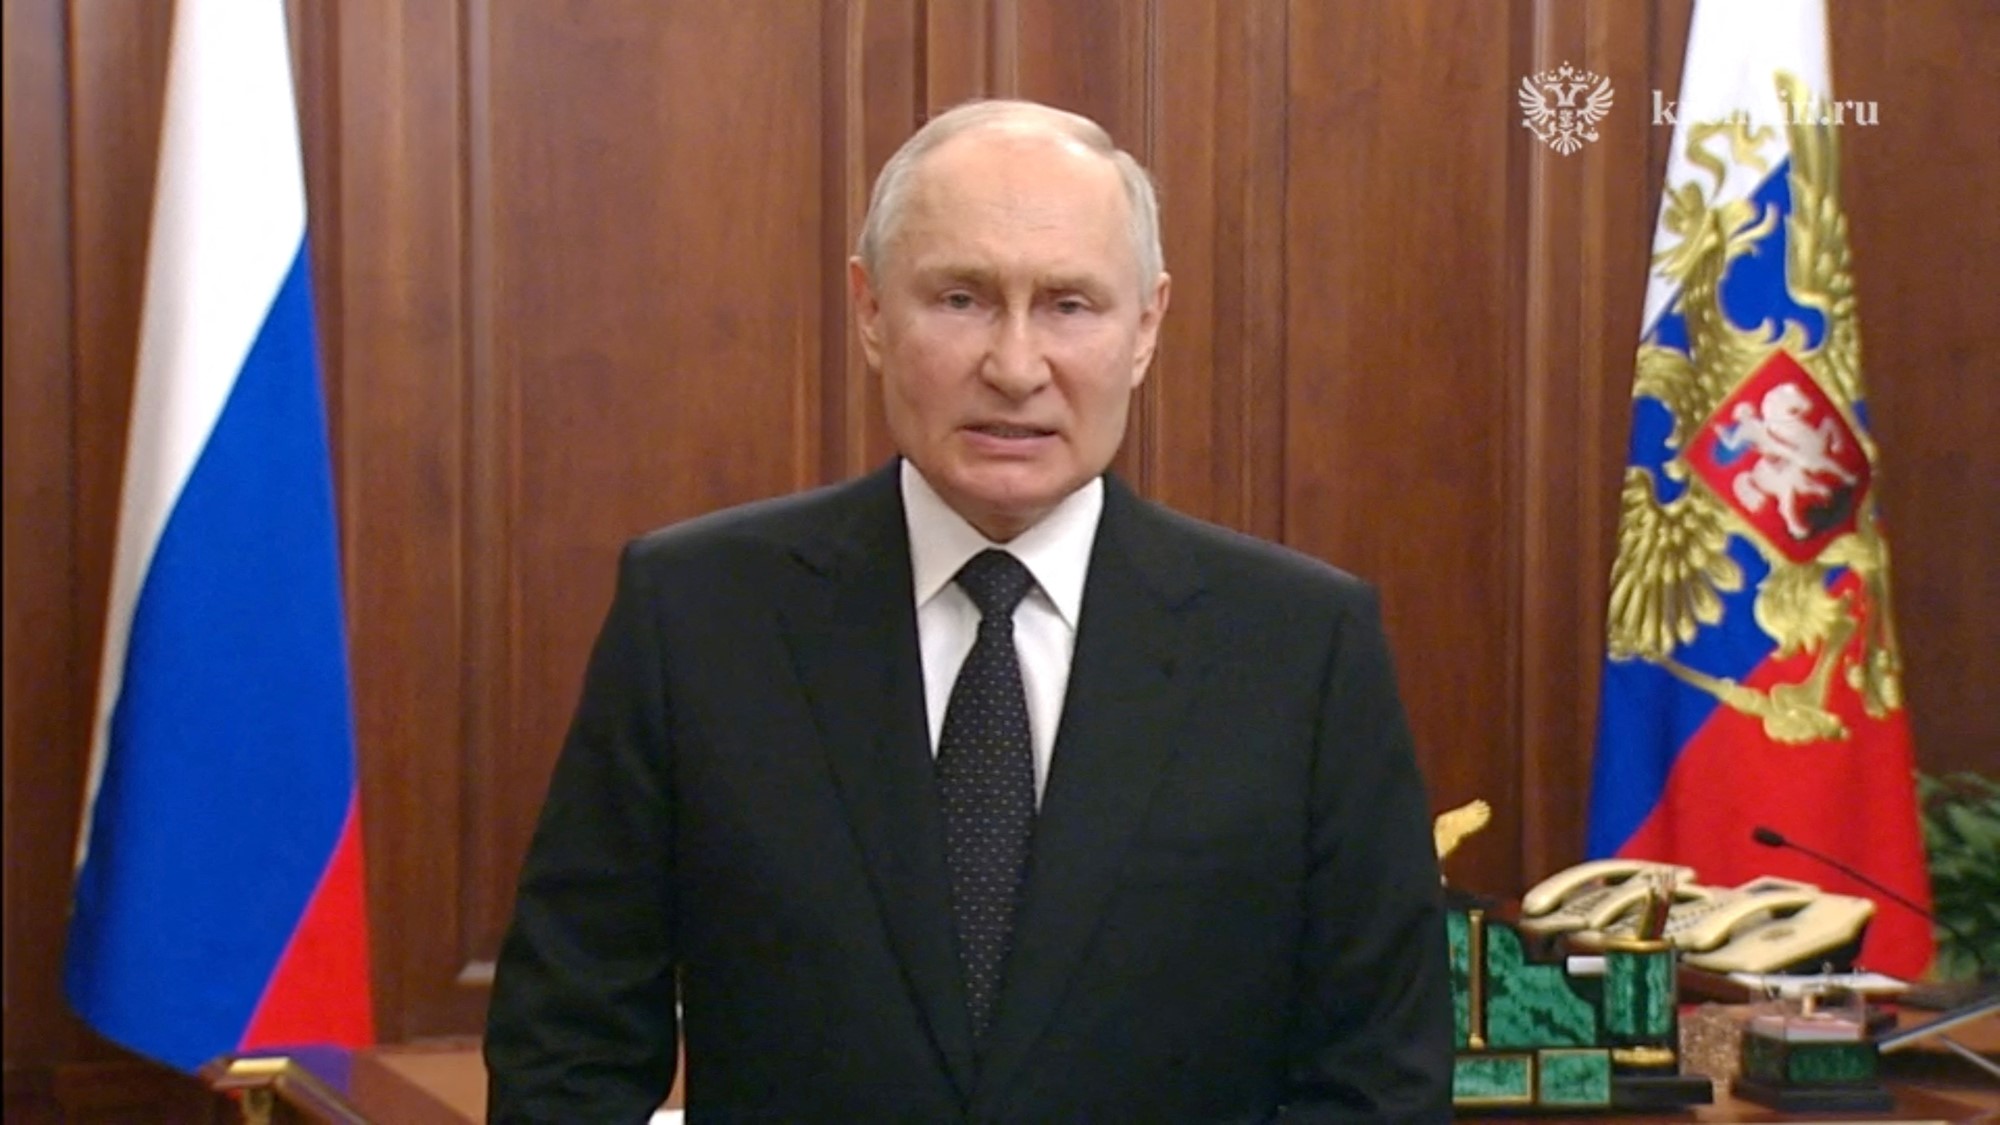 Vladimir Puting speaking during a national televised address.